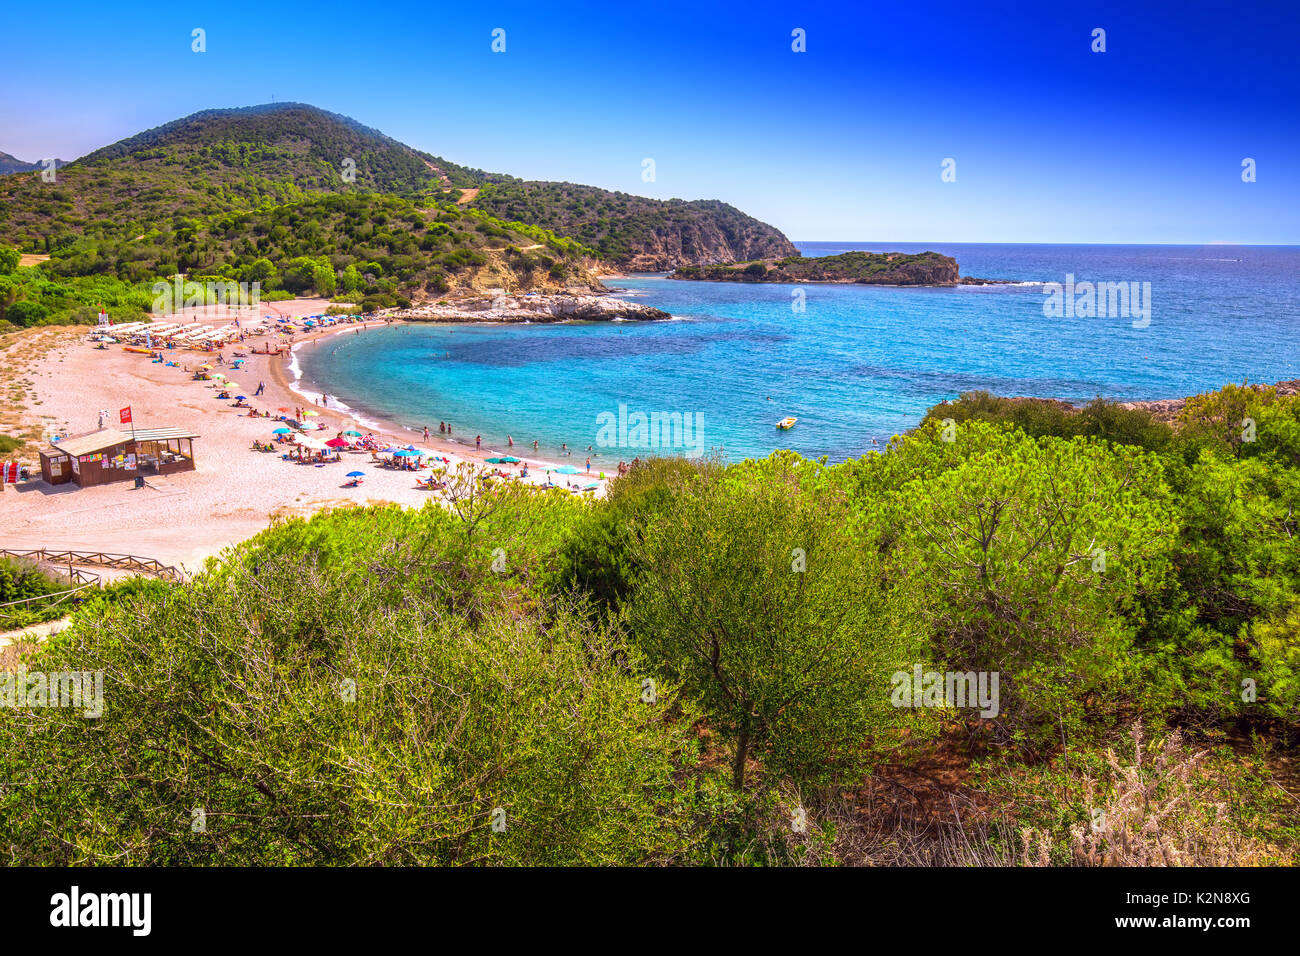 Su portu beach resort, Chia, Sardaigne, Italie, Europe. La Sardaigne est la deuxième plus grande île de la mer méditerranée Banque D'Images